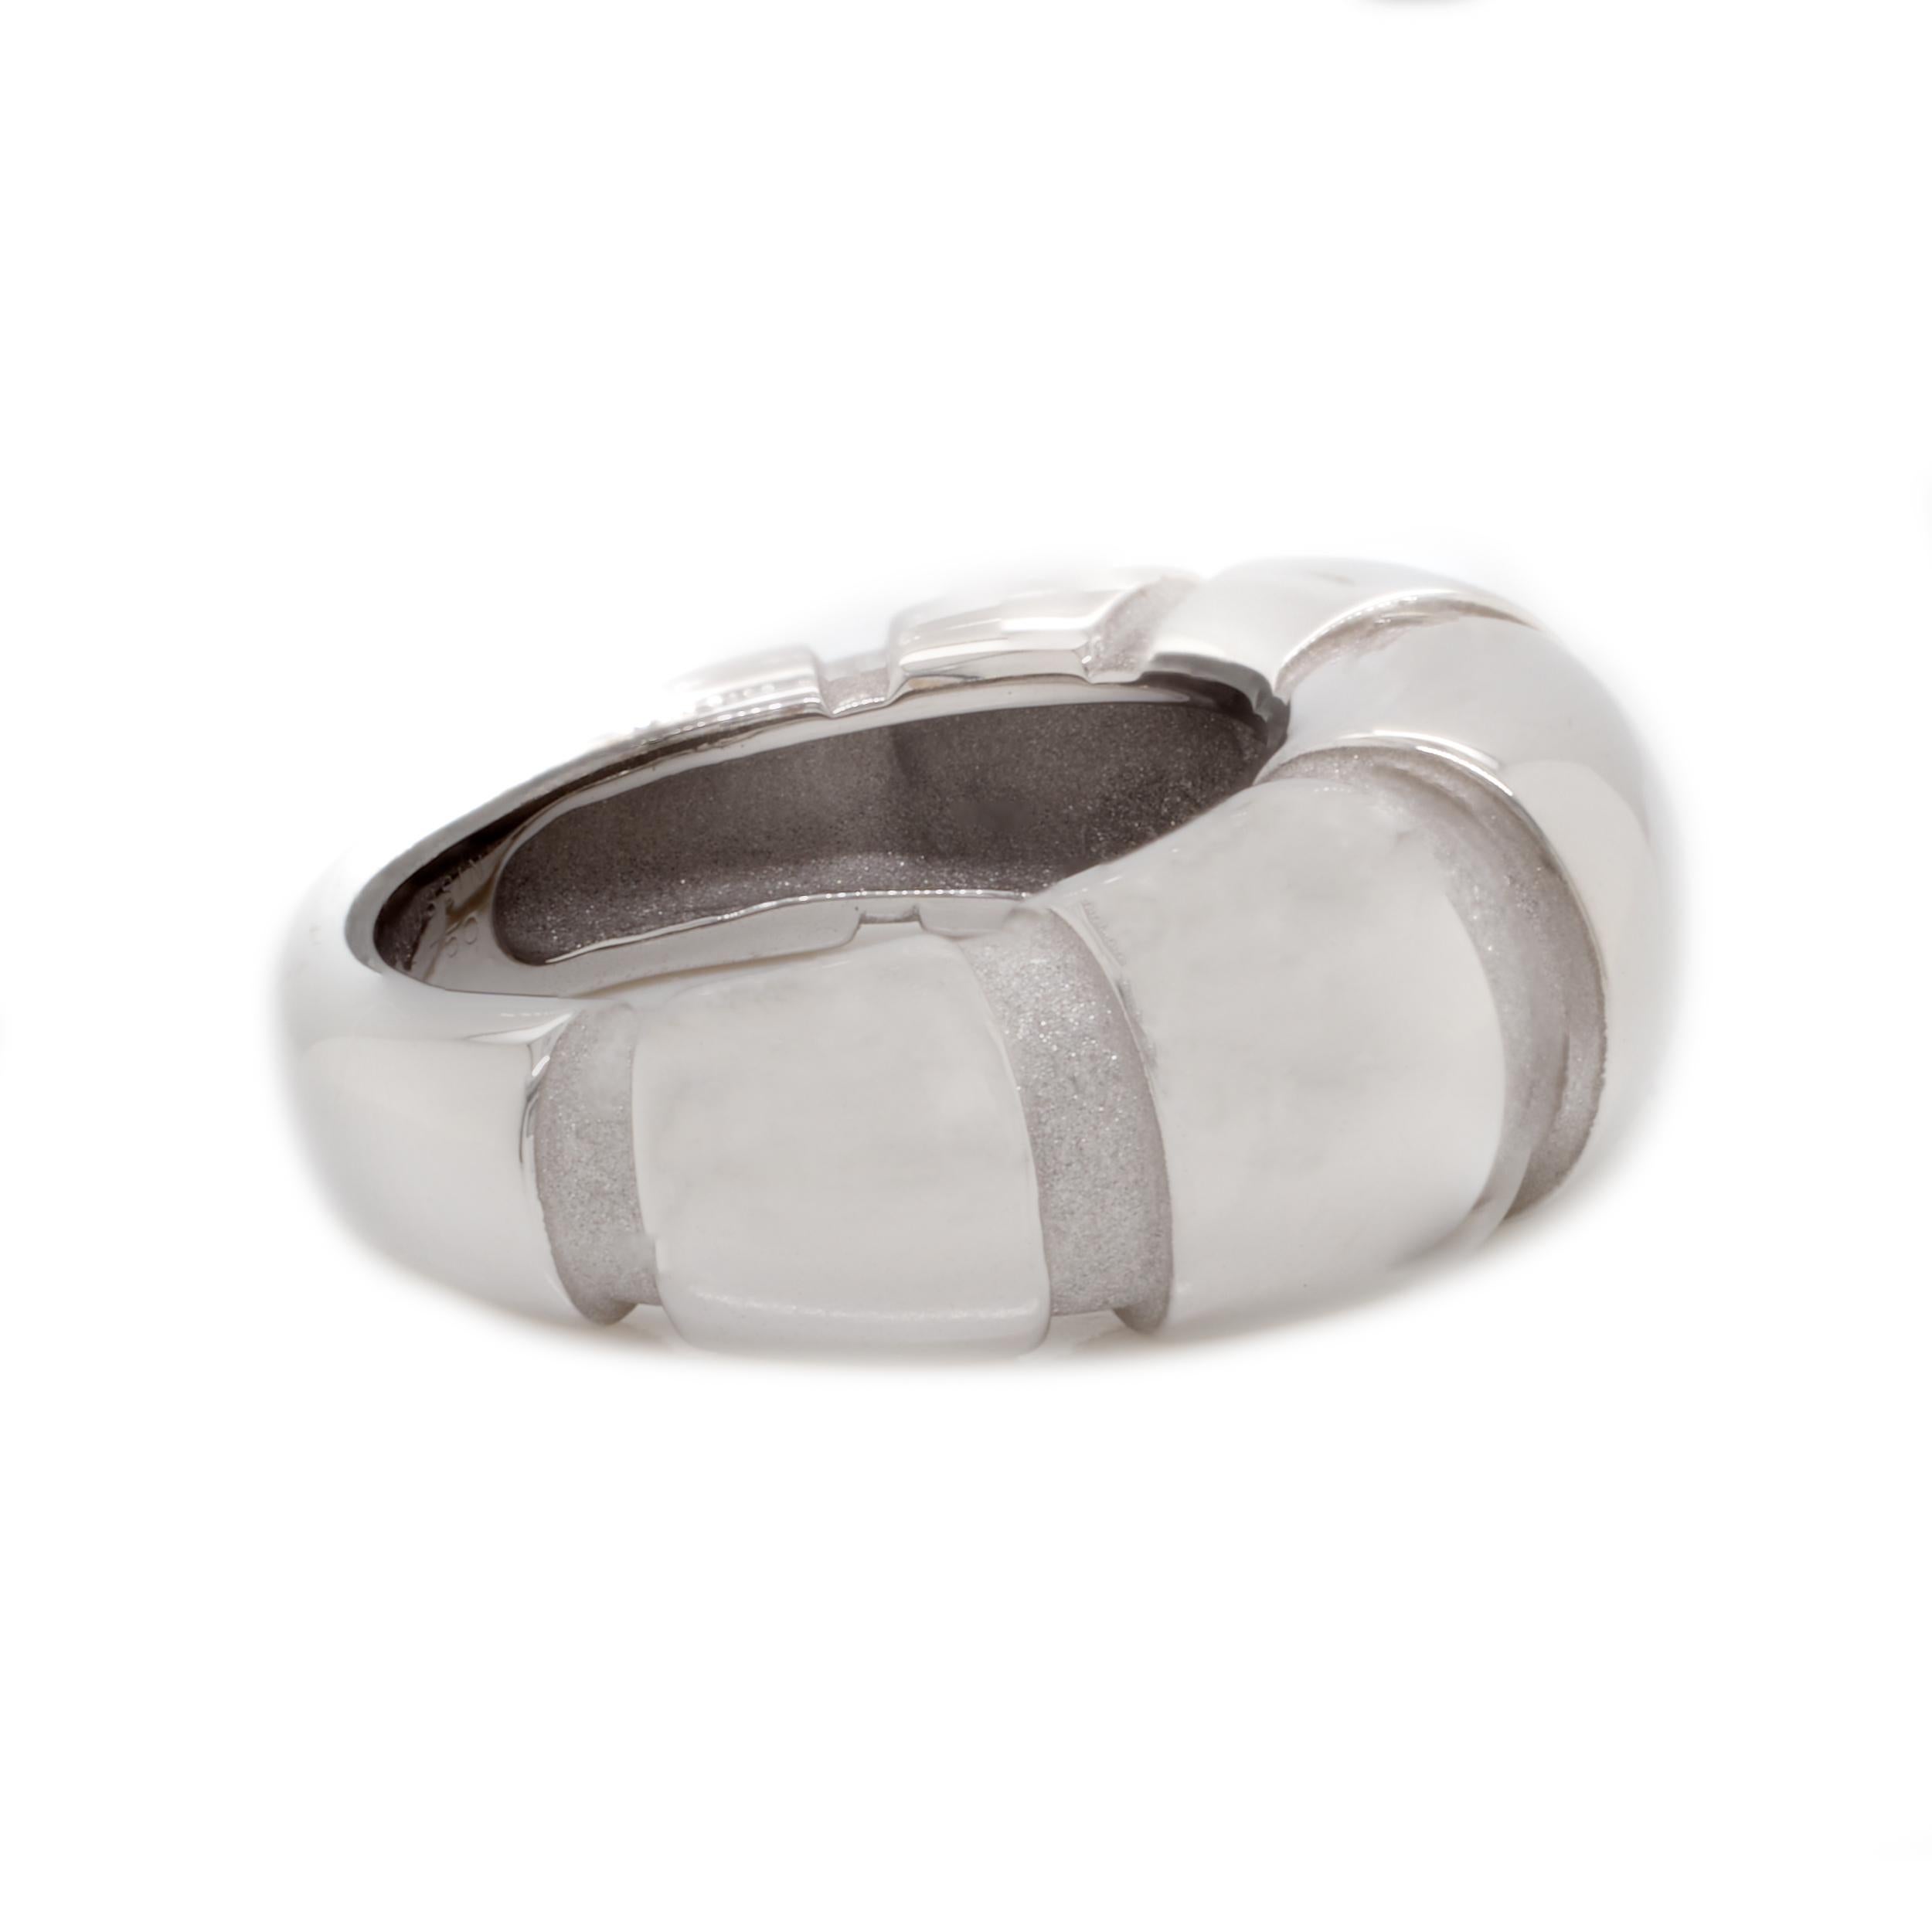 Concepteur : Mauboussin
Matériau : or blanc 18K
Poids : 12,68 grammes
Dimensions : l'anneau mesure 9,2 mm de large
Taille : 6.5 (veuillez prévoir deux jours supplémentaires pour le calibrage gratuit)
